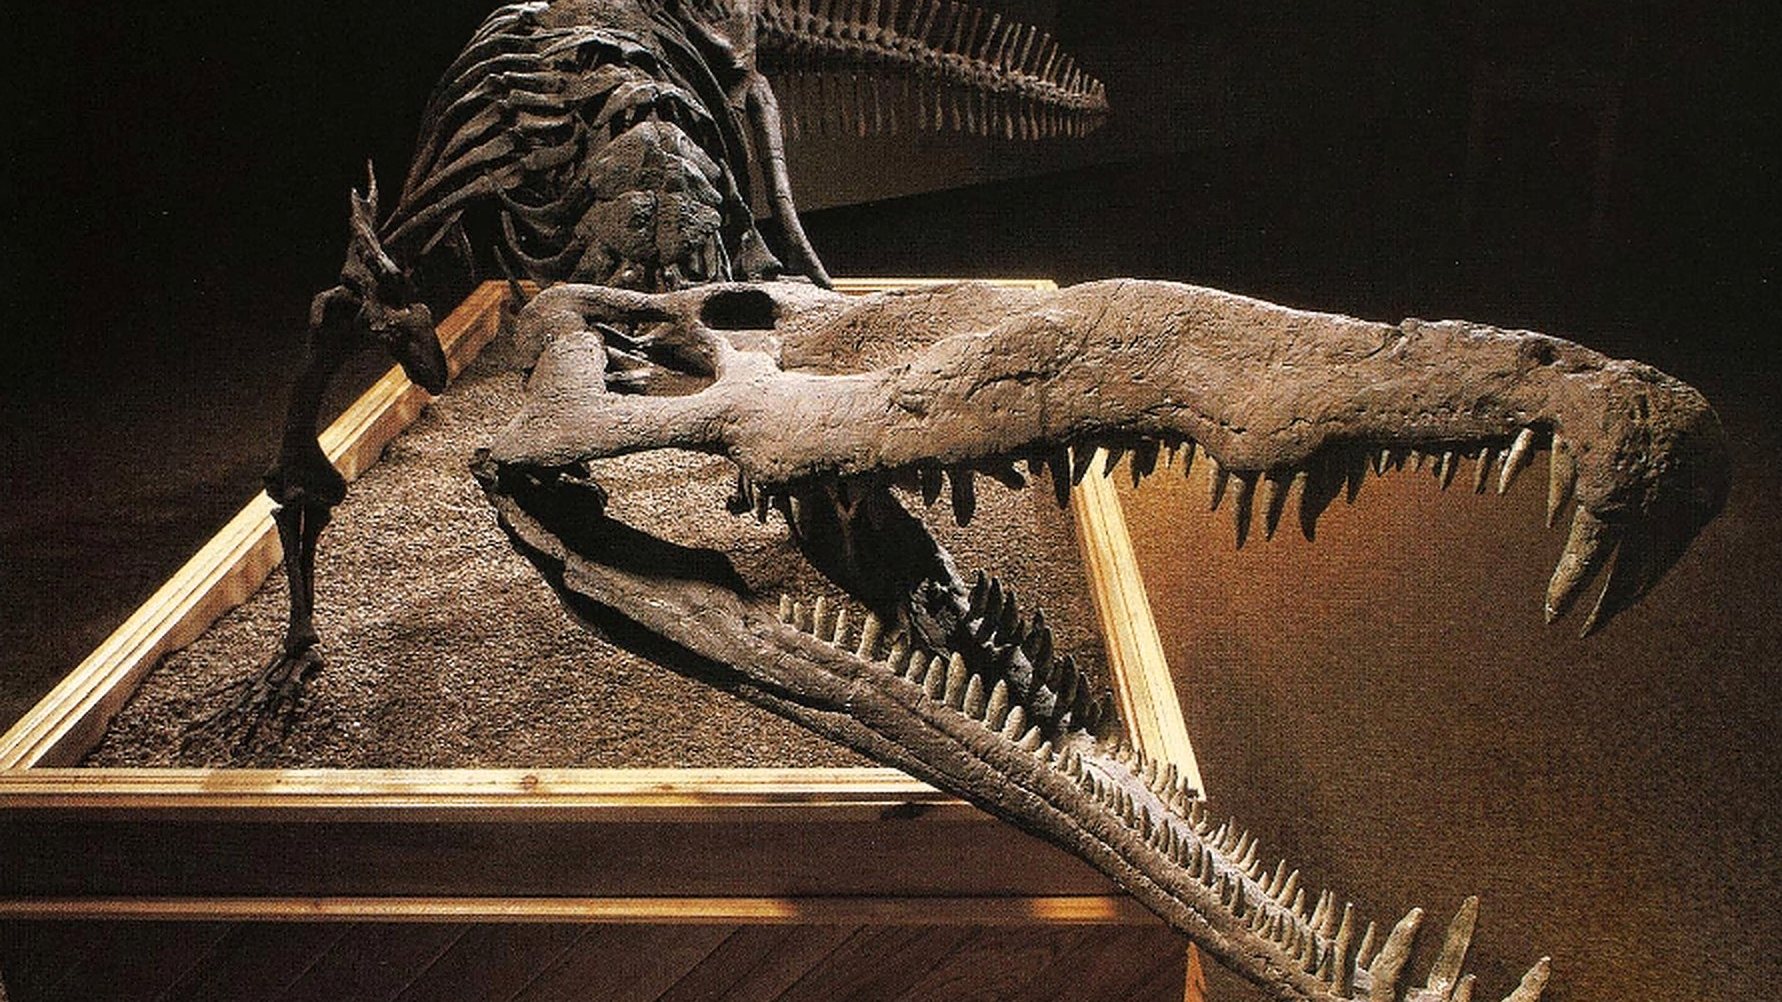 Os fitossauros viveram como crocodilos no Triássico, em quase todos os continentes, mas, apesar das semelhanças, os répteis não são da mesma família de répteis